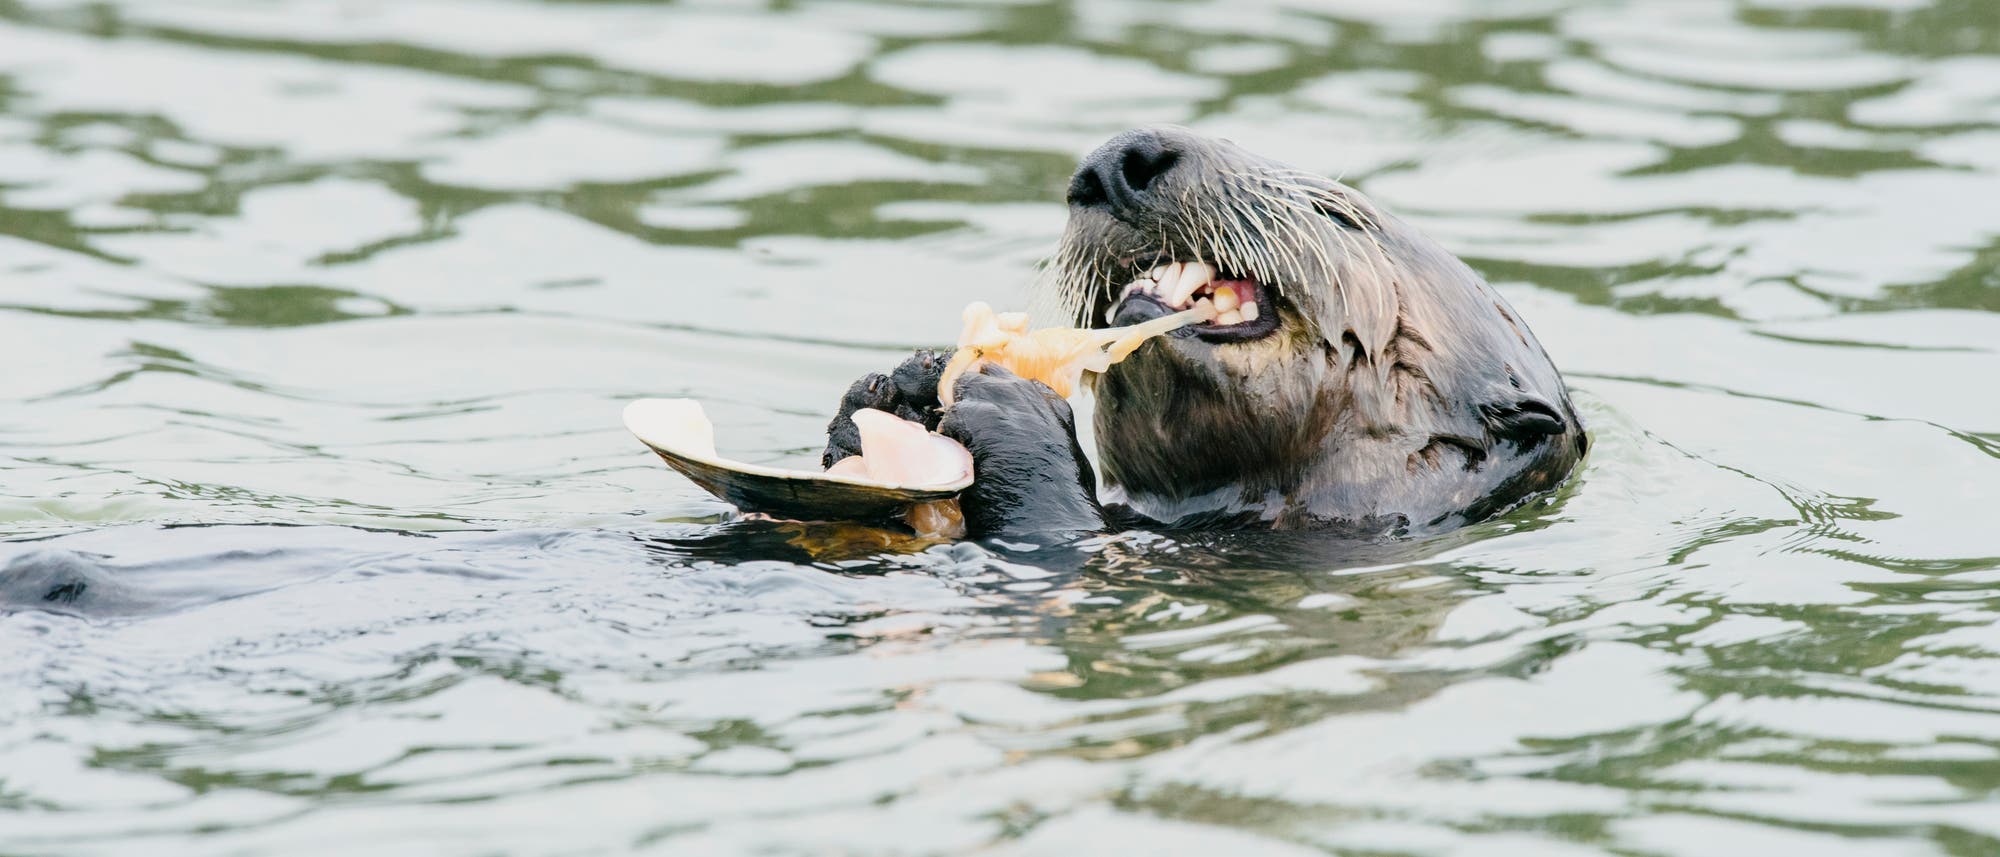 Seeotter knackt eine Auster